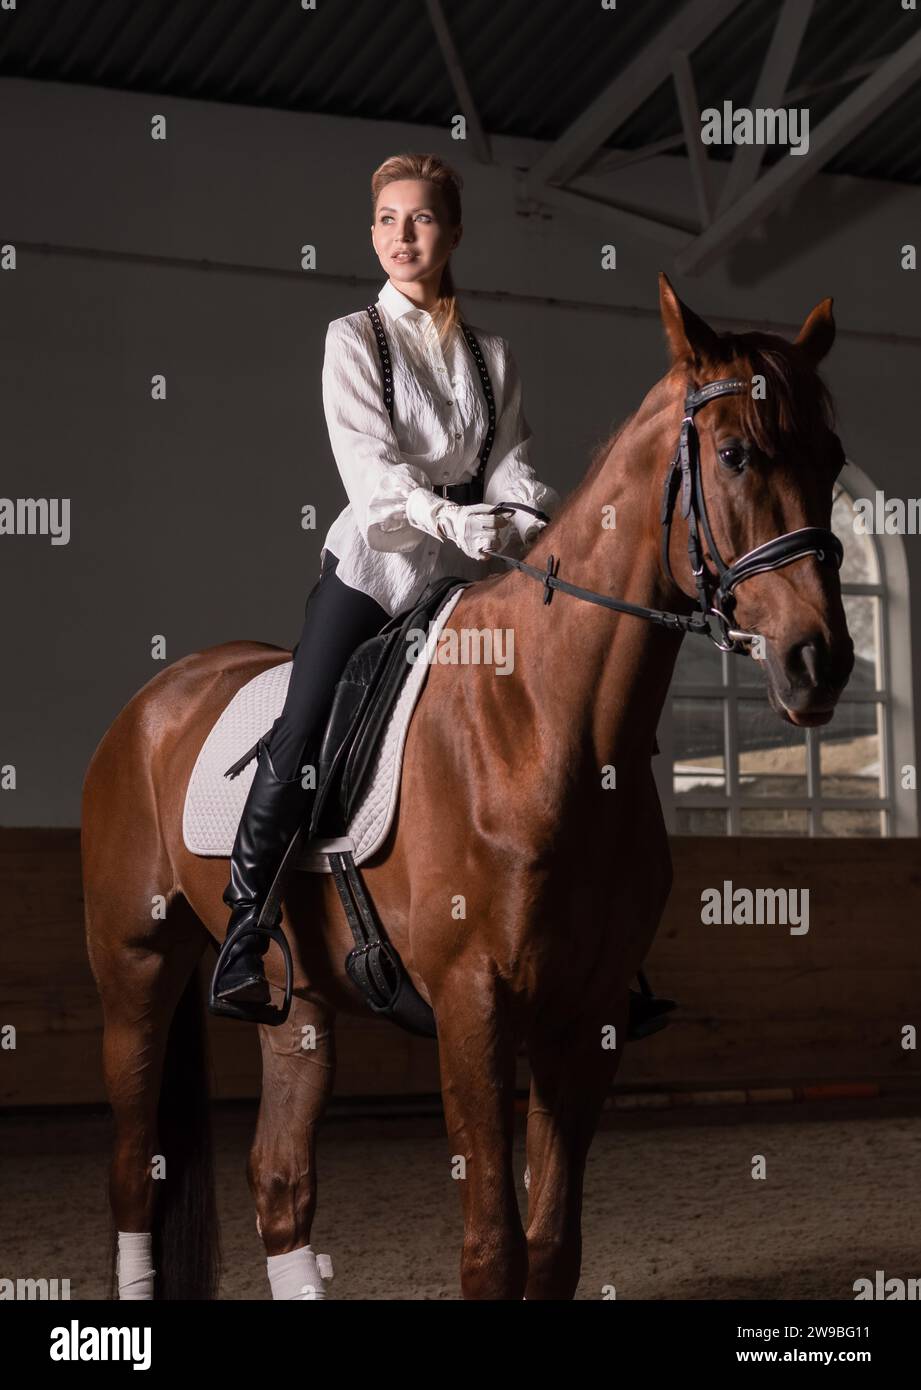 Immagine di una donna che cavalca un cavallo purosangue. Lo sfondo è un'arena di corse. Supporti misti Foto Stock